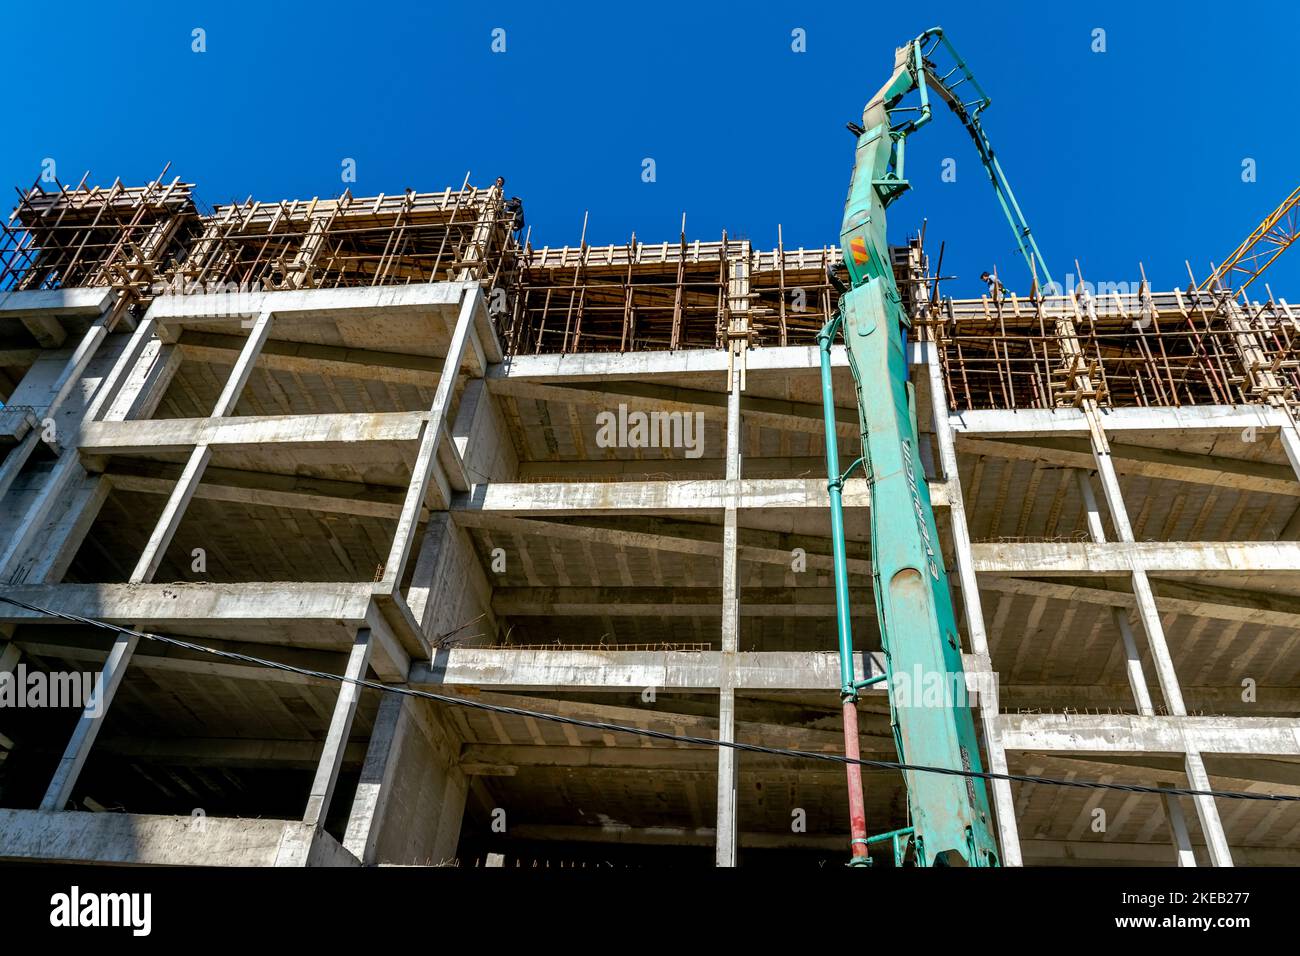 Verser une dalle de béton dans un chantier de construction, avec des grues et des tuyaux de coulée, des ouvriers non reconnaissables sur le toit de ferrobéton. Banque D'Images